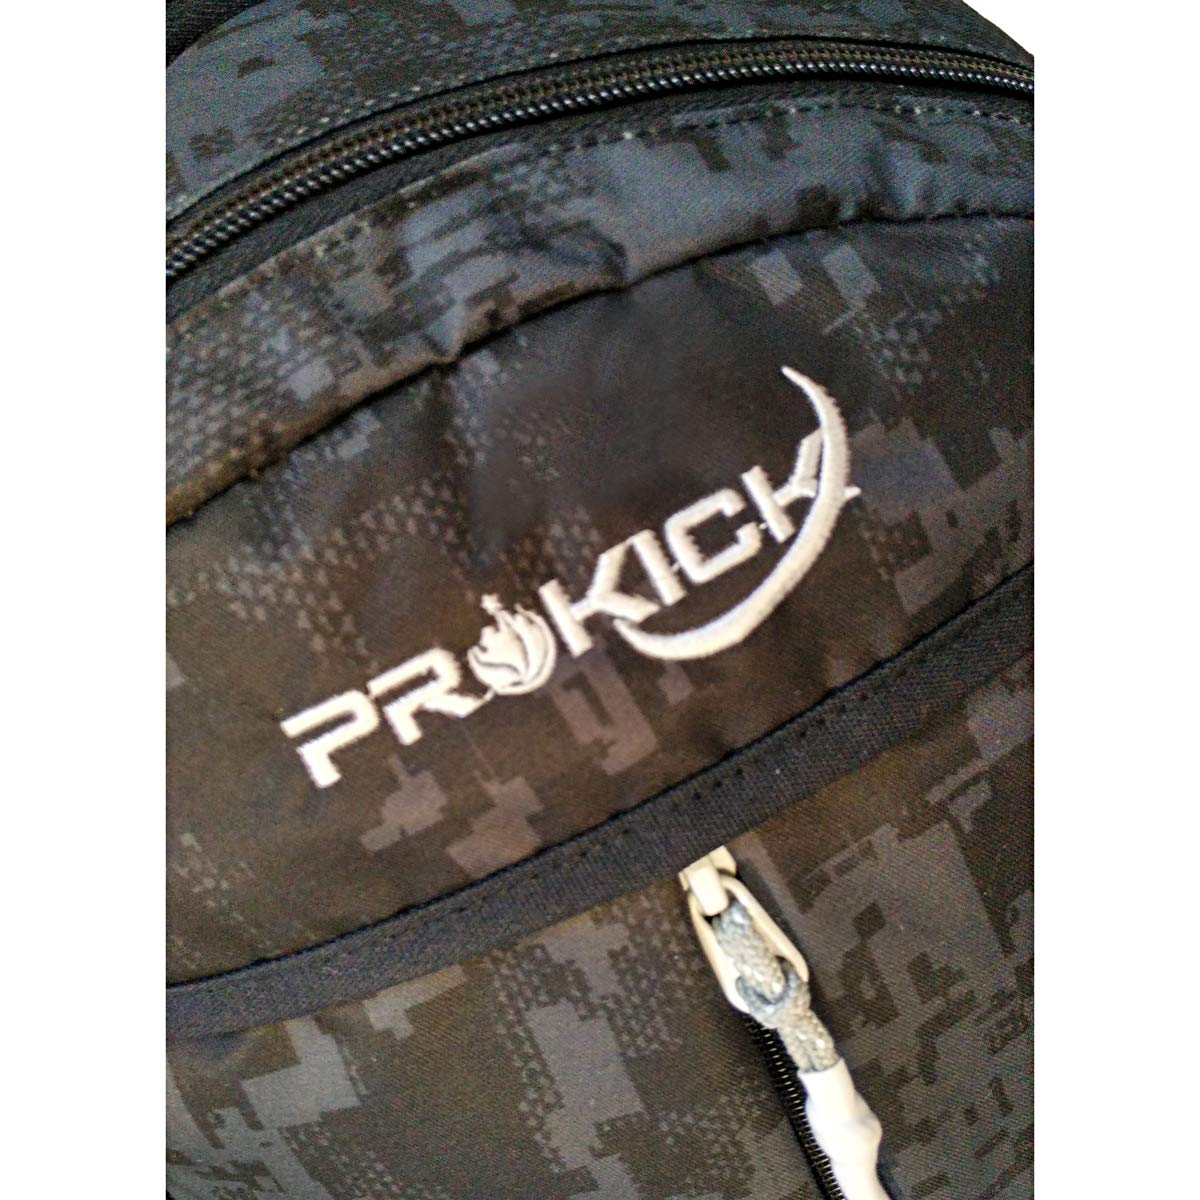 Prokick 30L Waterproof Casual Backpack | School Bag - Black Matrix - Best Price online Prokicksports.com